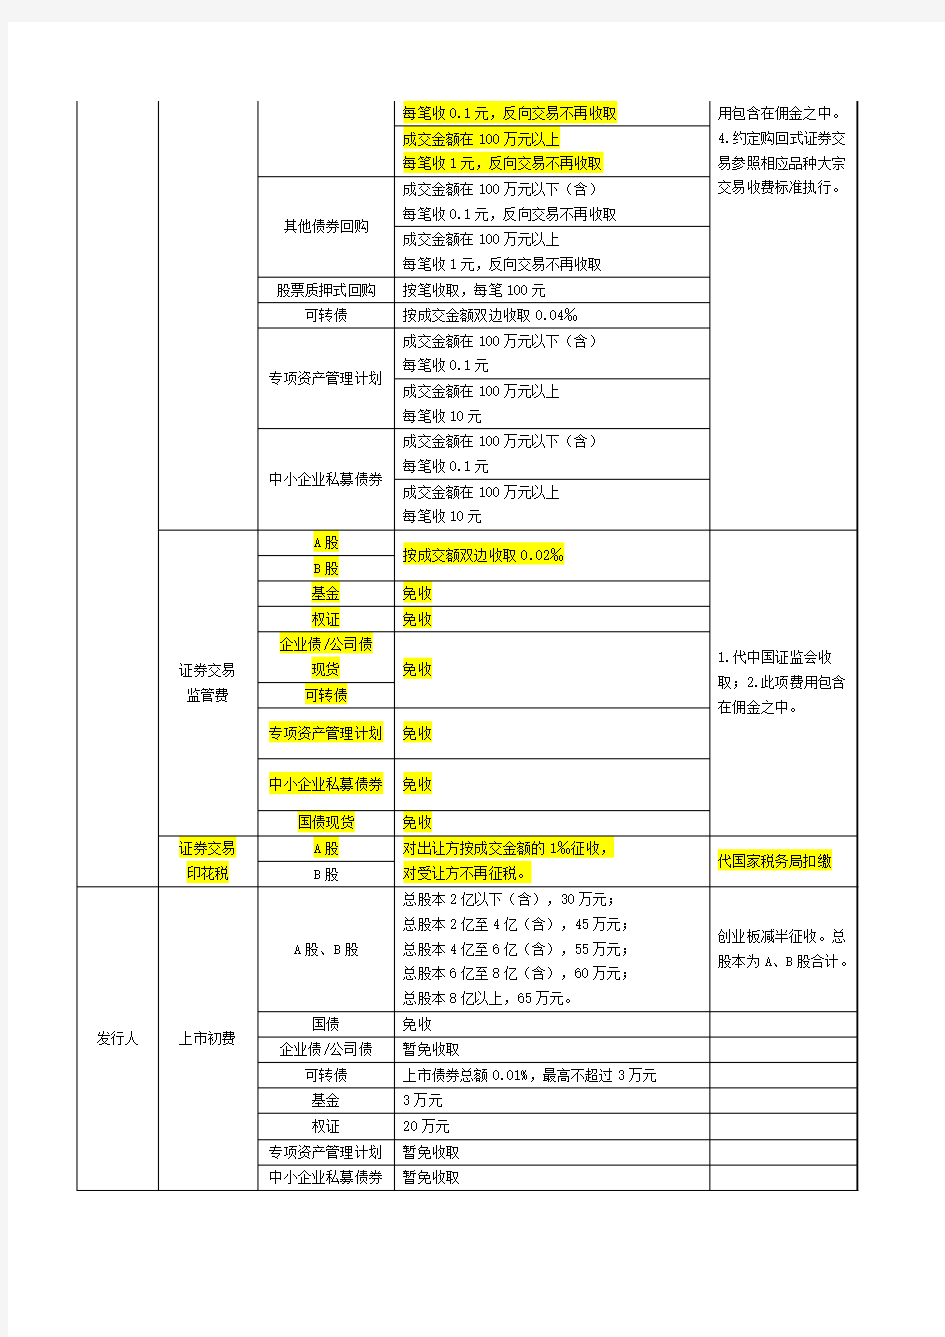 深圳证券交易所收费(及代收税费)明细表